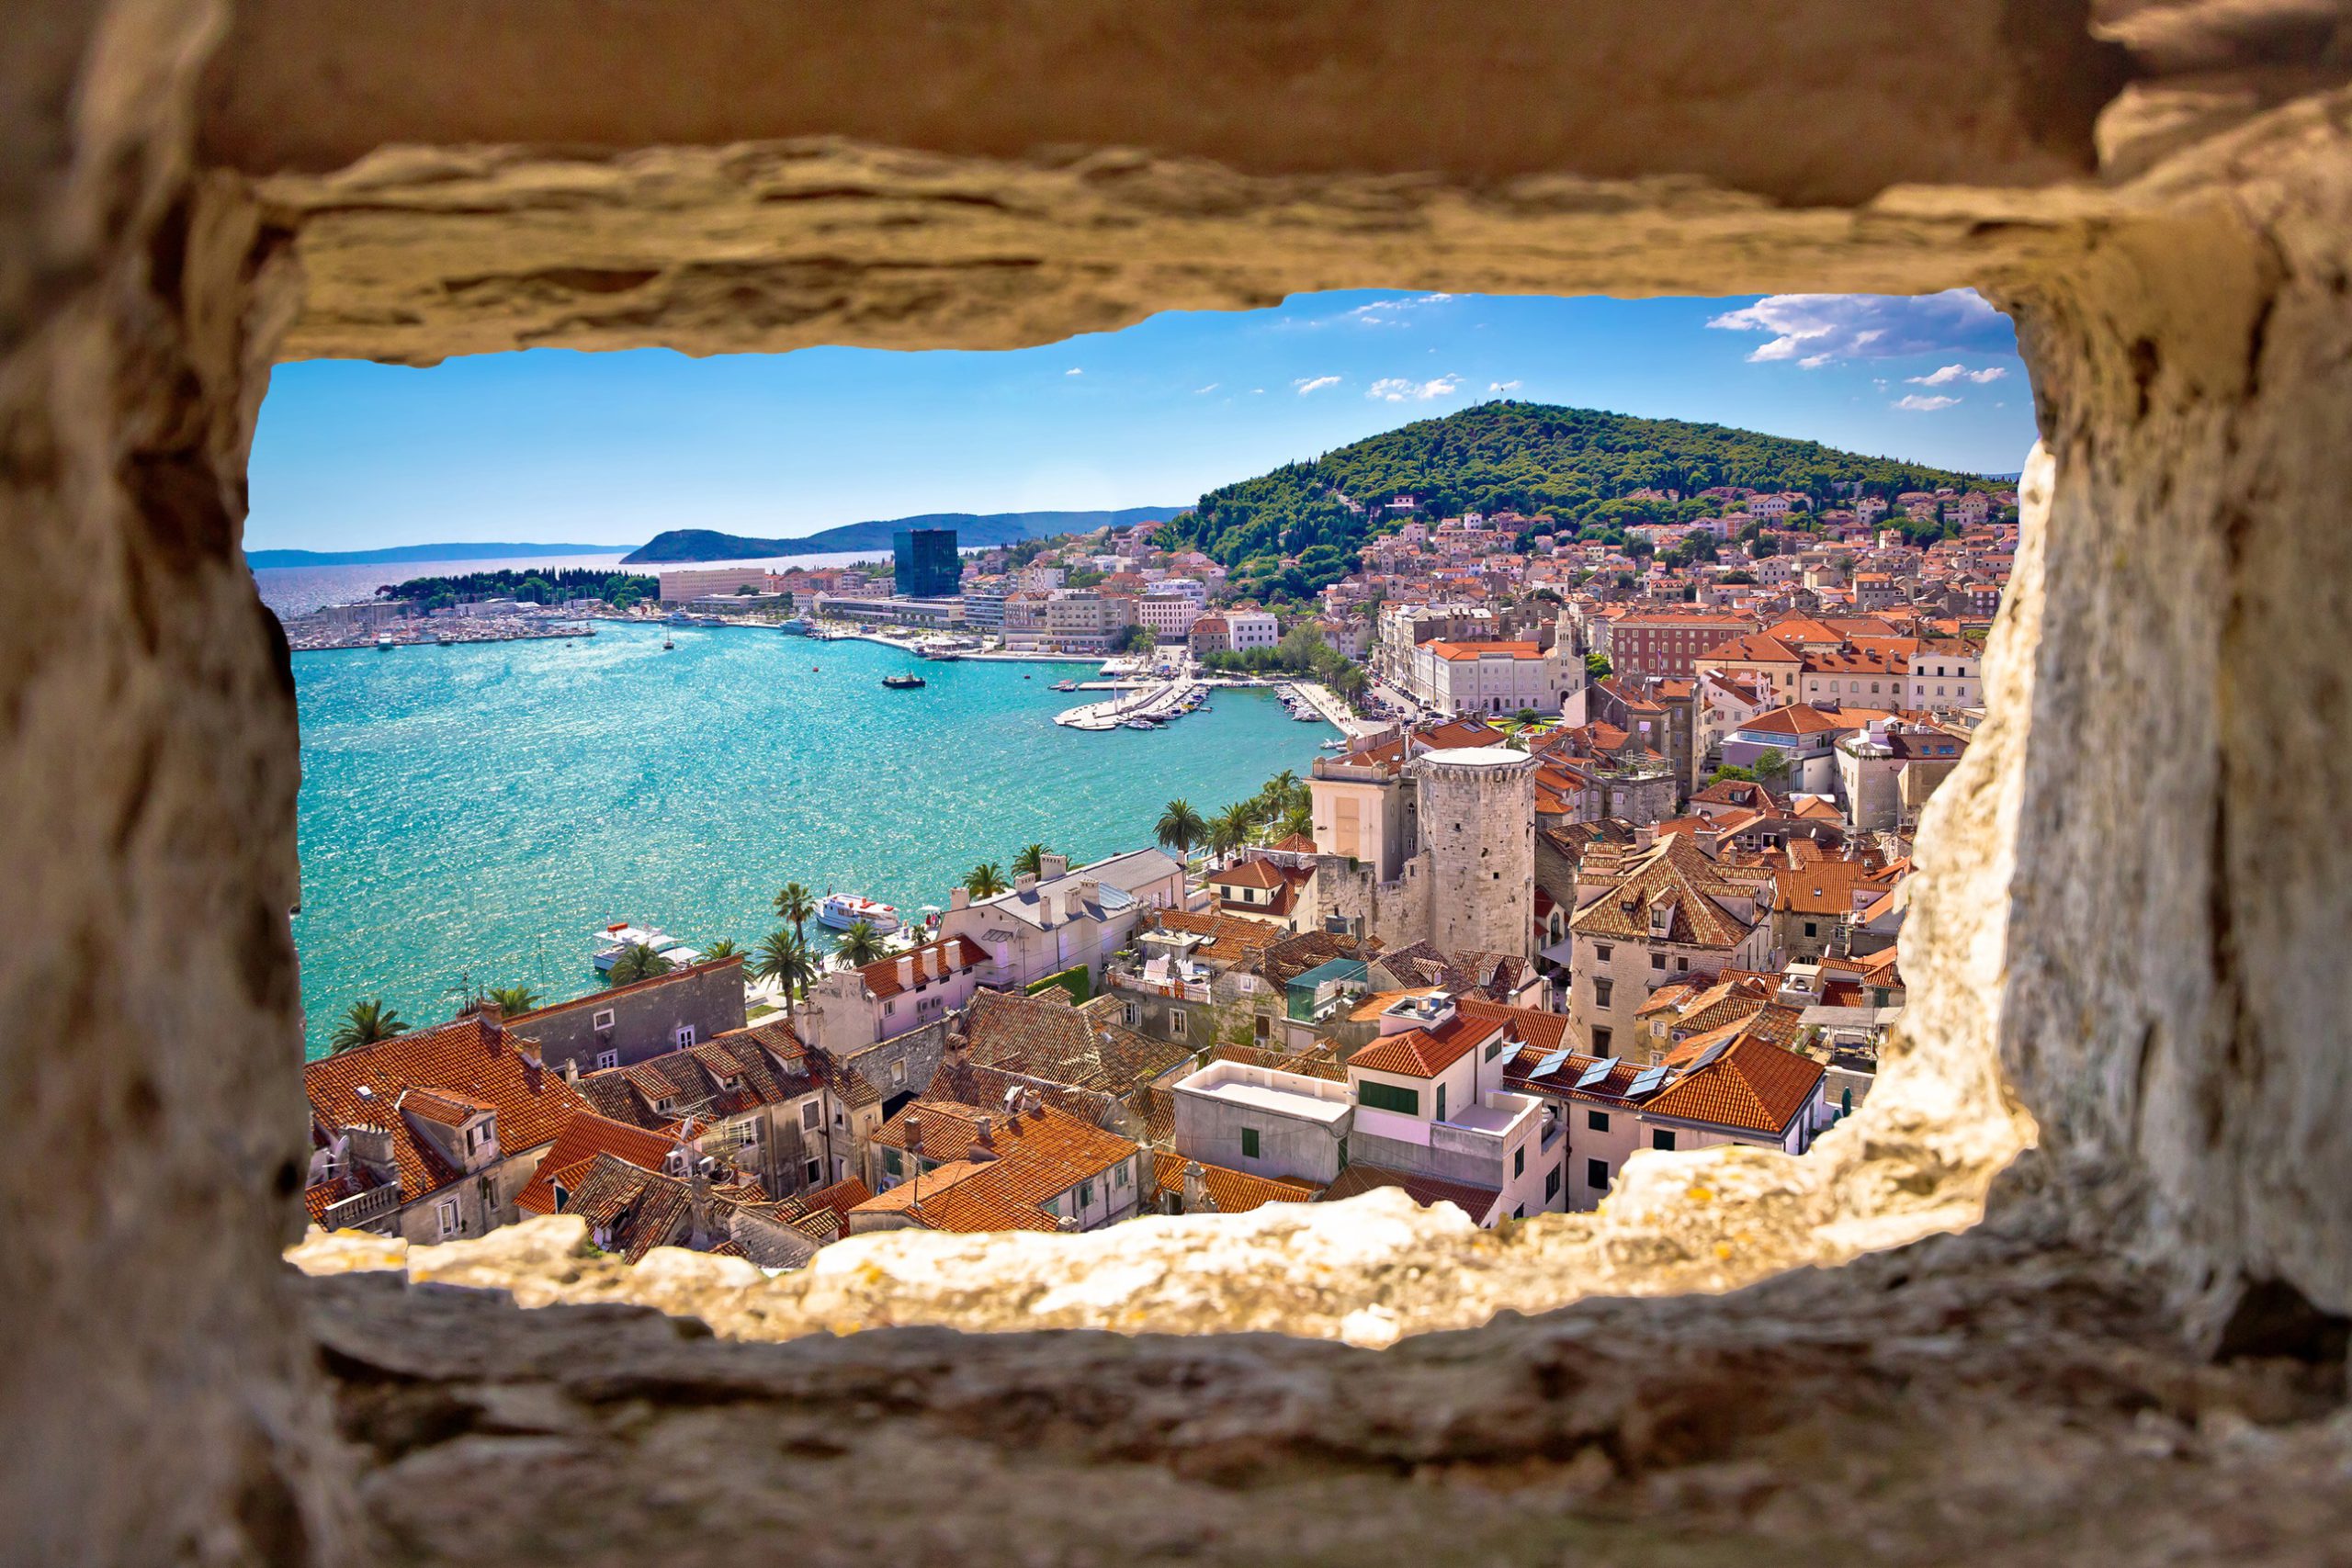 Dovolená v Chorvatsku pořád táhne, turisté míří do letadel, do lepších hotelů i na výlety